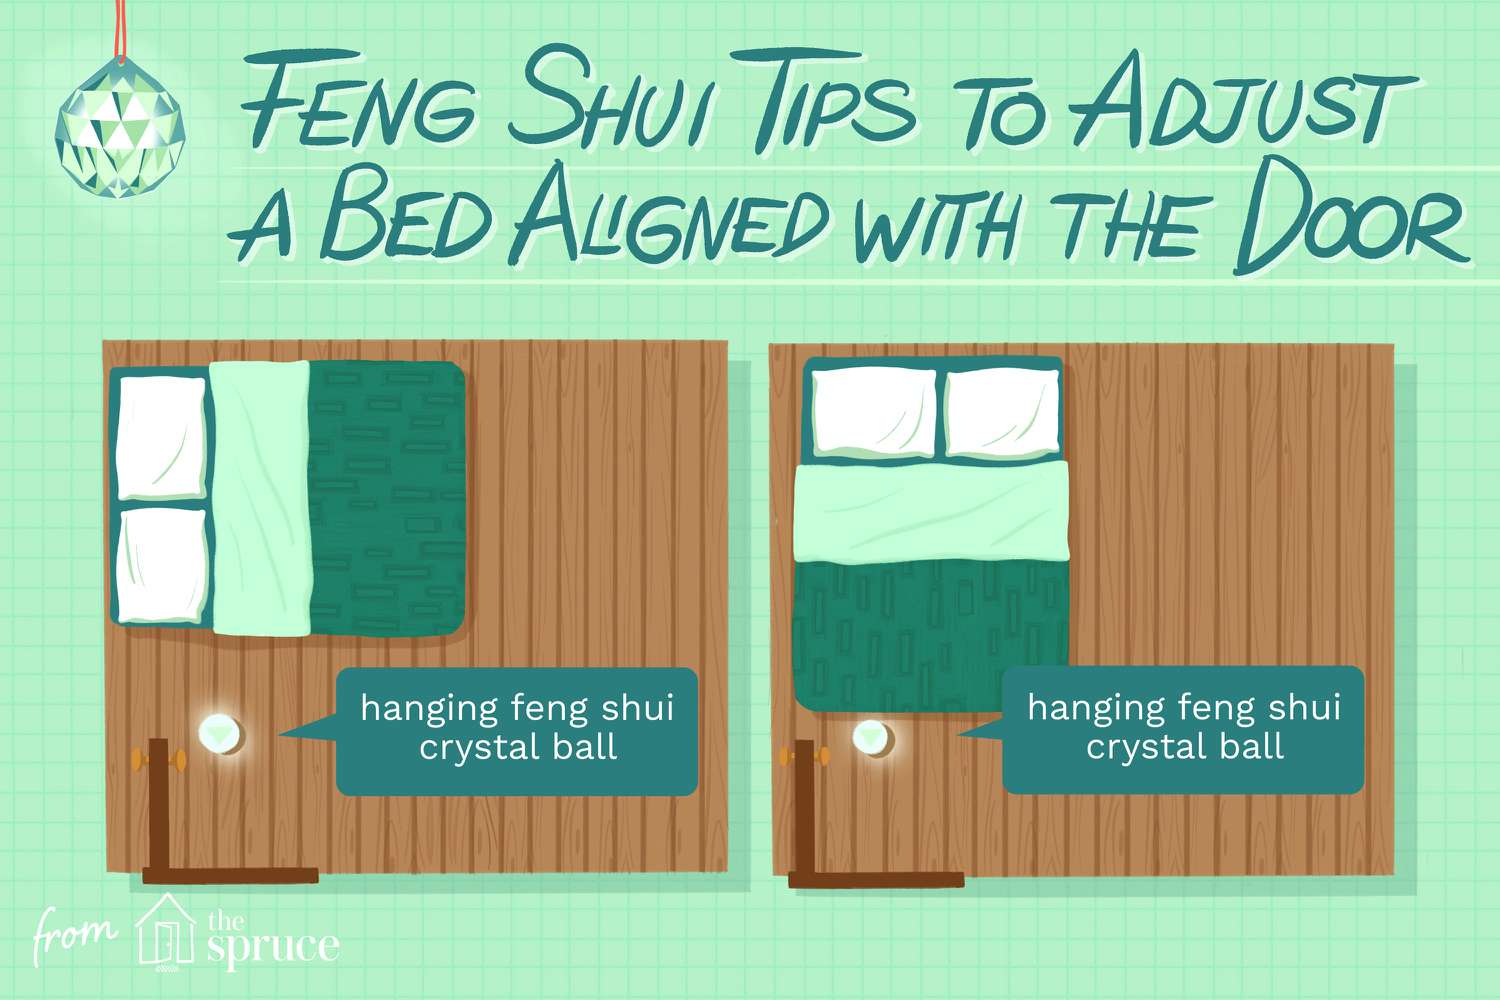 Ilustração que explica como alinhar uma cama com a porta para obter o melhor Feng Shui.